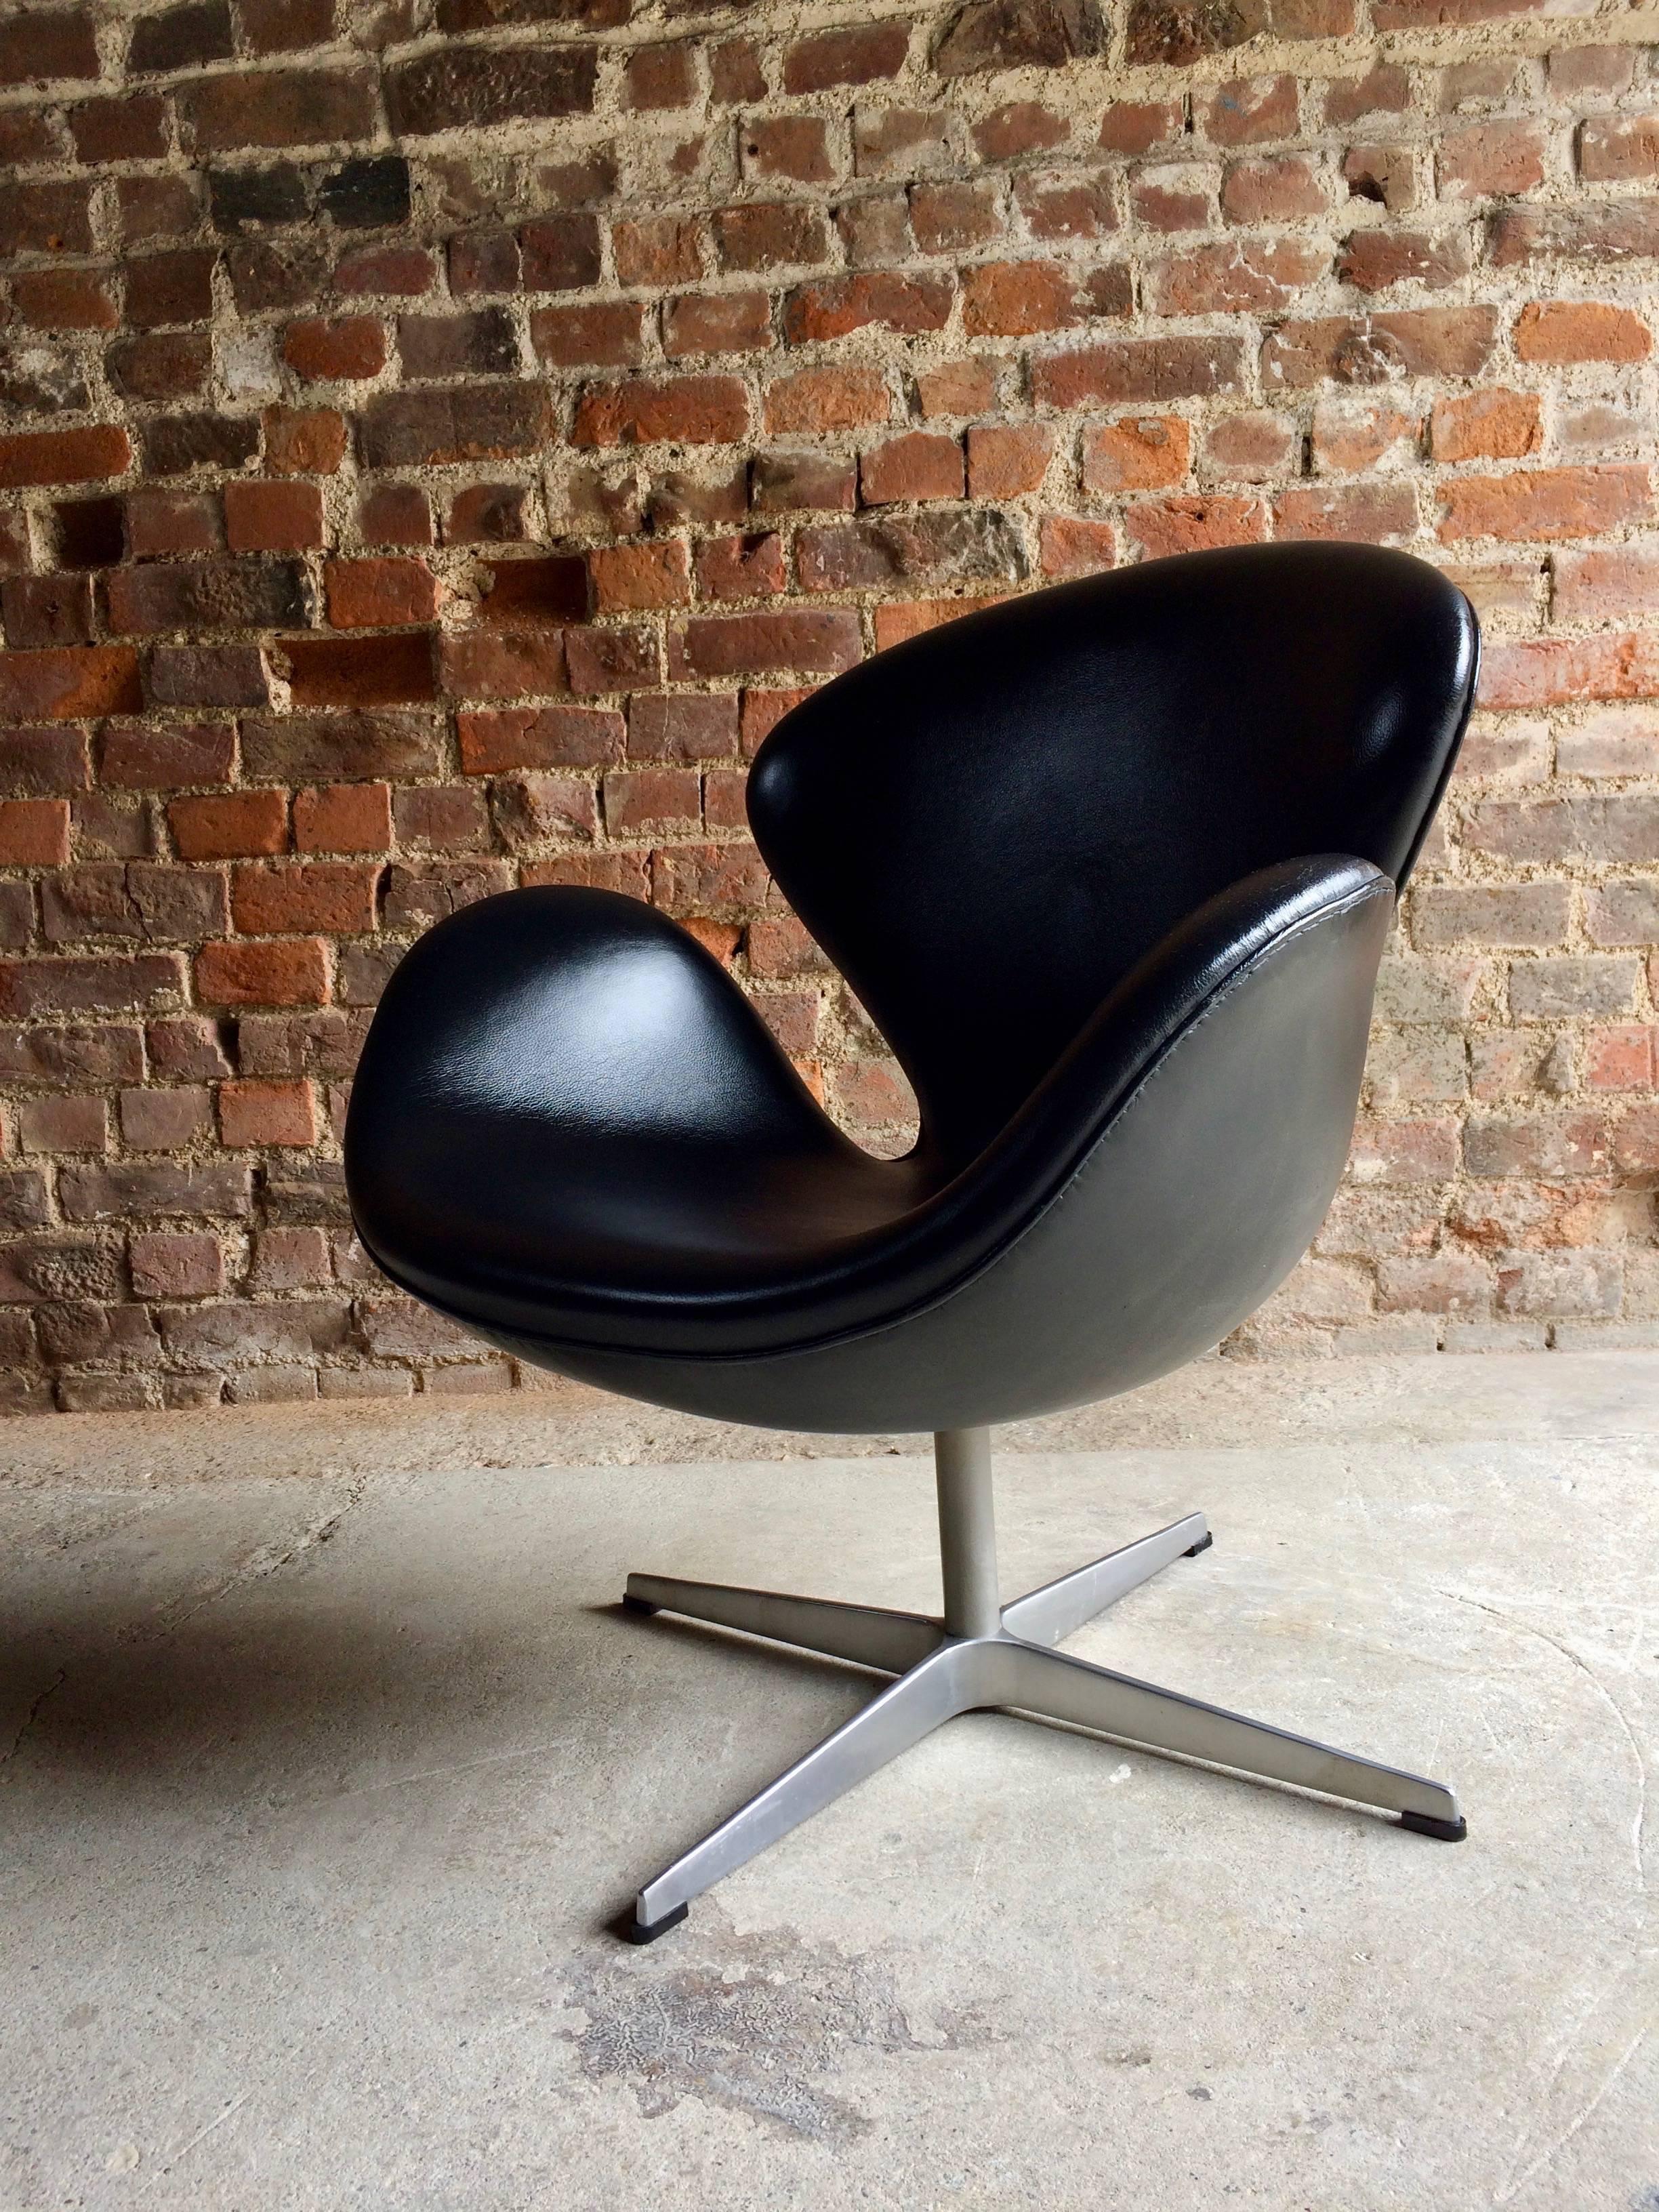 Arne Jacobsen Swan Chair Black Leather for Fritz Hansen, 2002, Danish 1